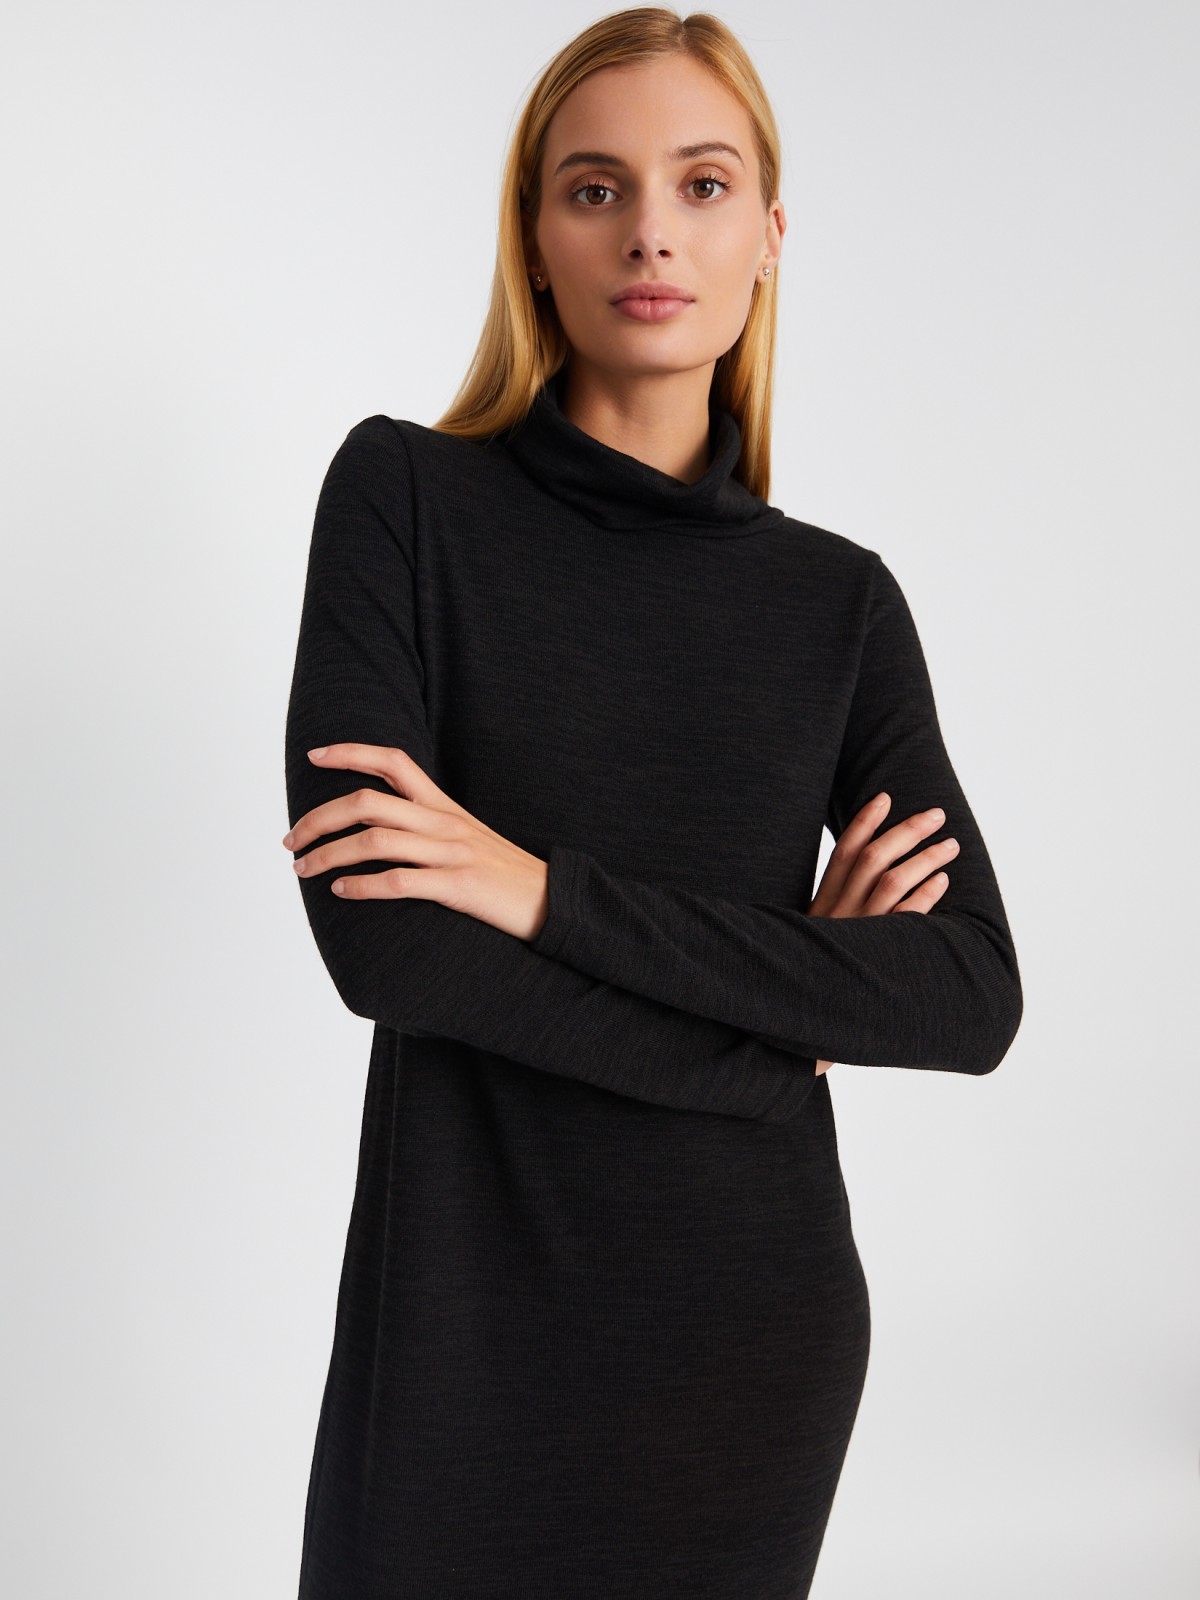 Трикотажное платье-свитер длины миди с высоким горлом zolla 02334819F062, цвет темно-серый, размер XS - фото 4